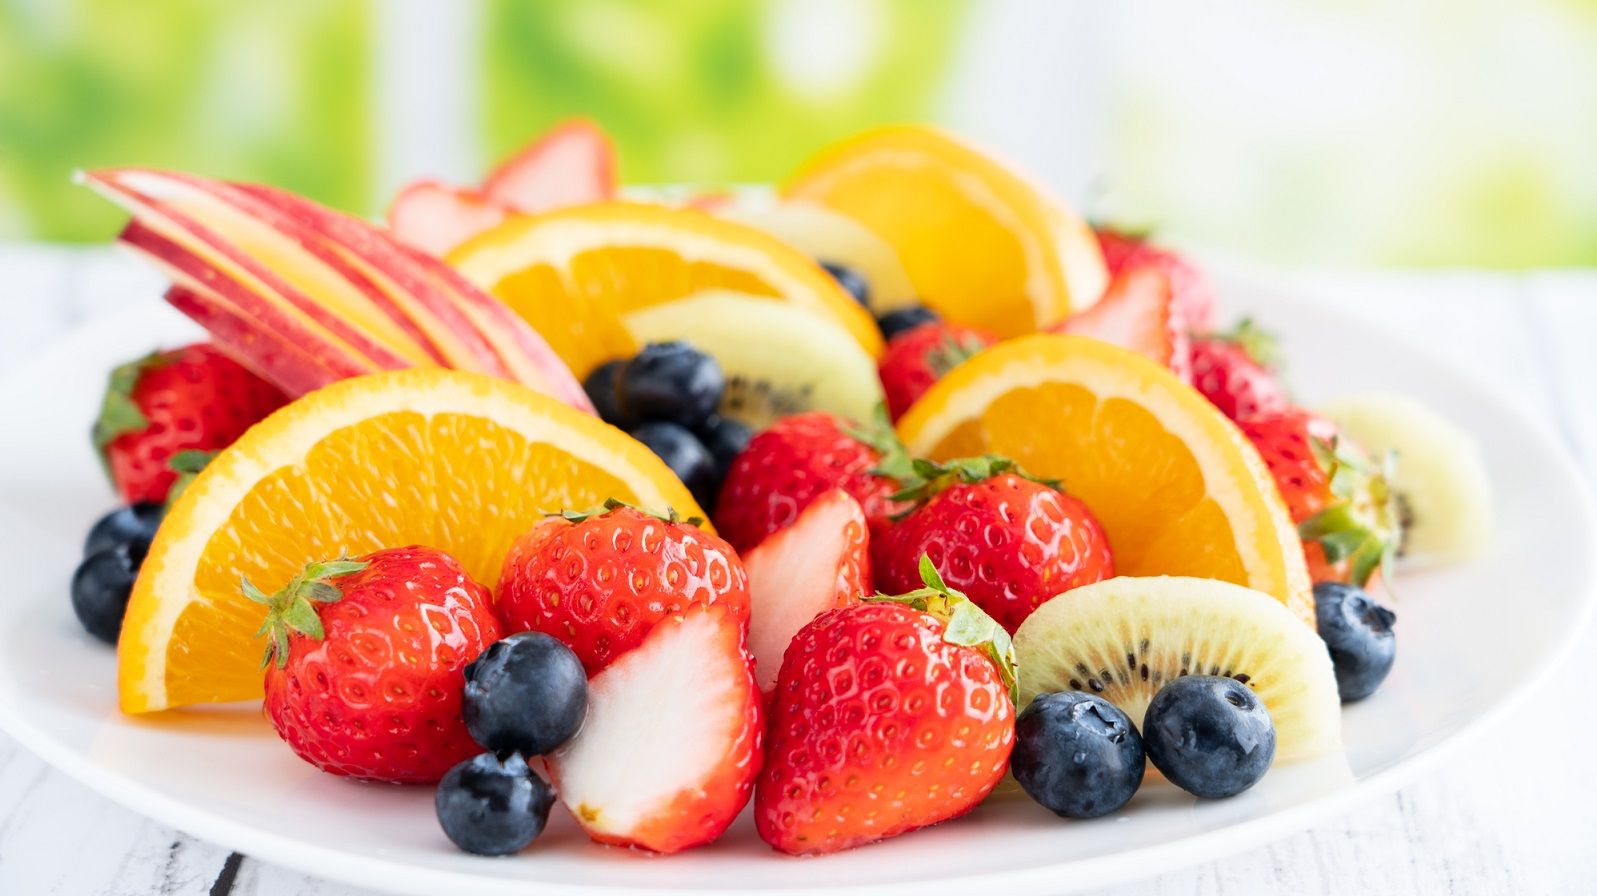 ｢朝ごはんにフルーツ｣が"食後血糖値"にNGな根拠 スムージーや､朝食抜きも避けたほうがいい